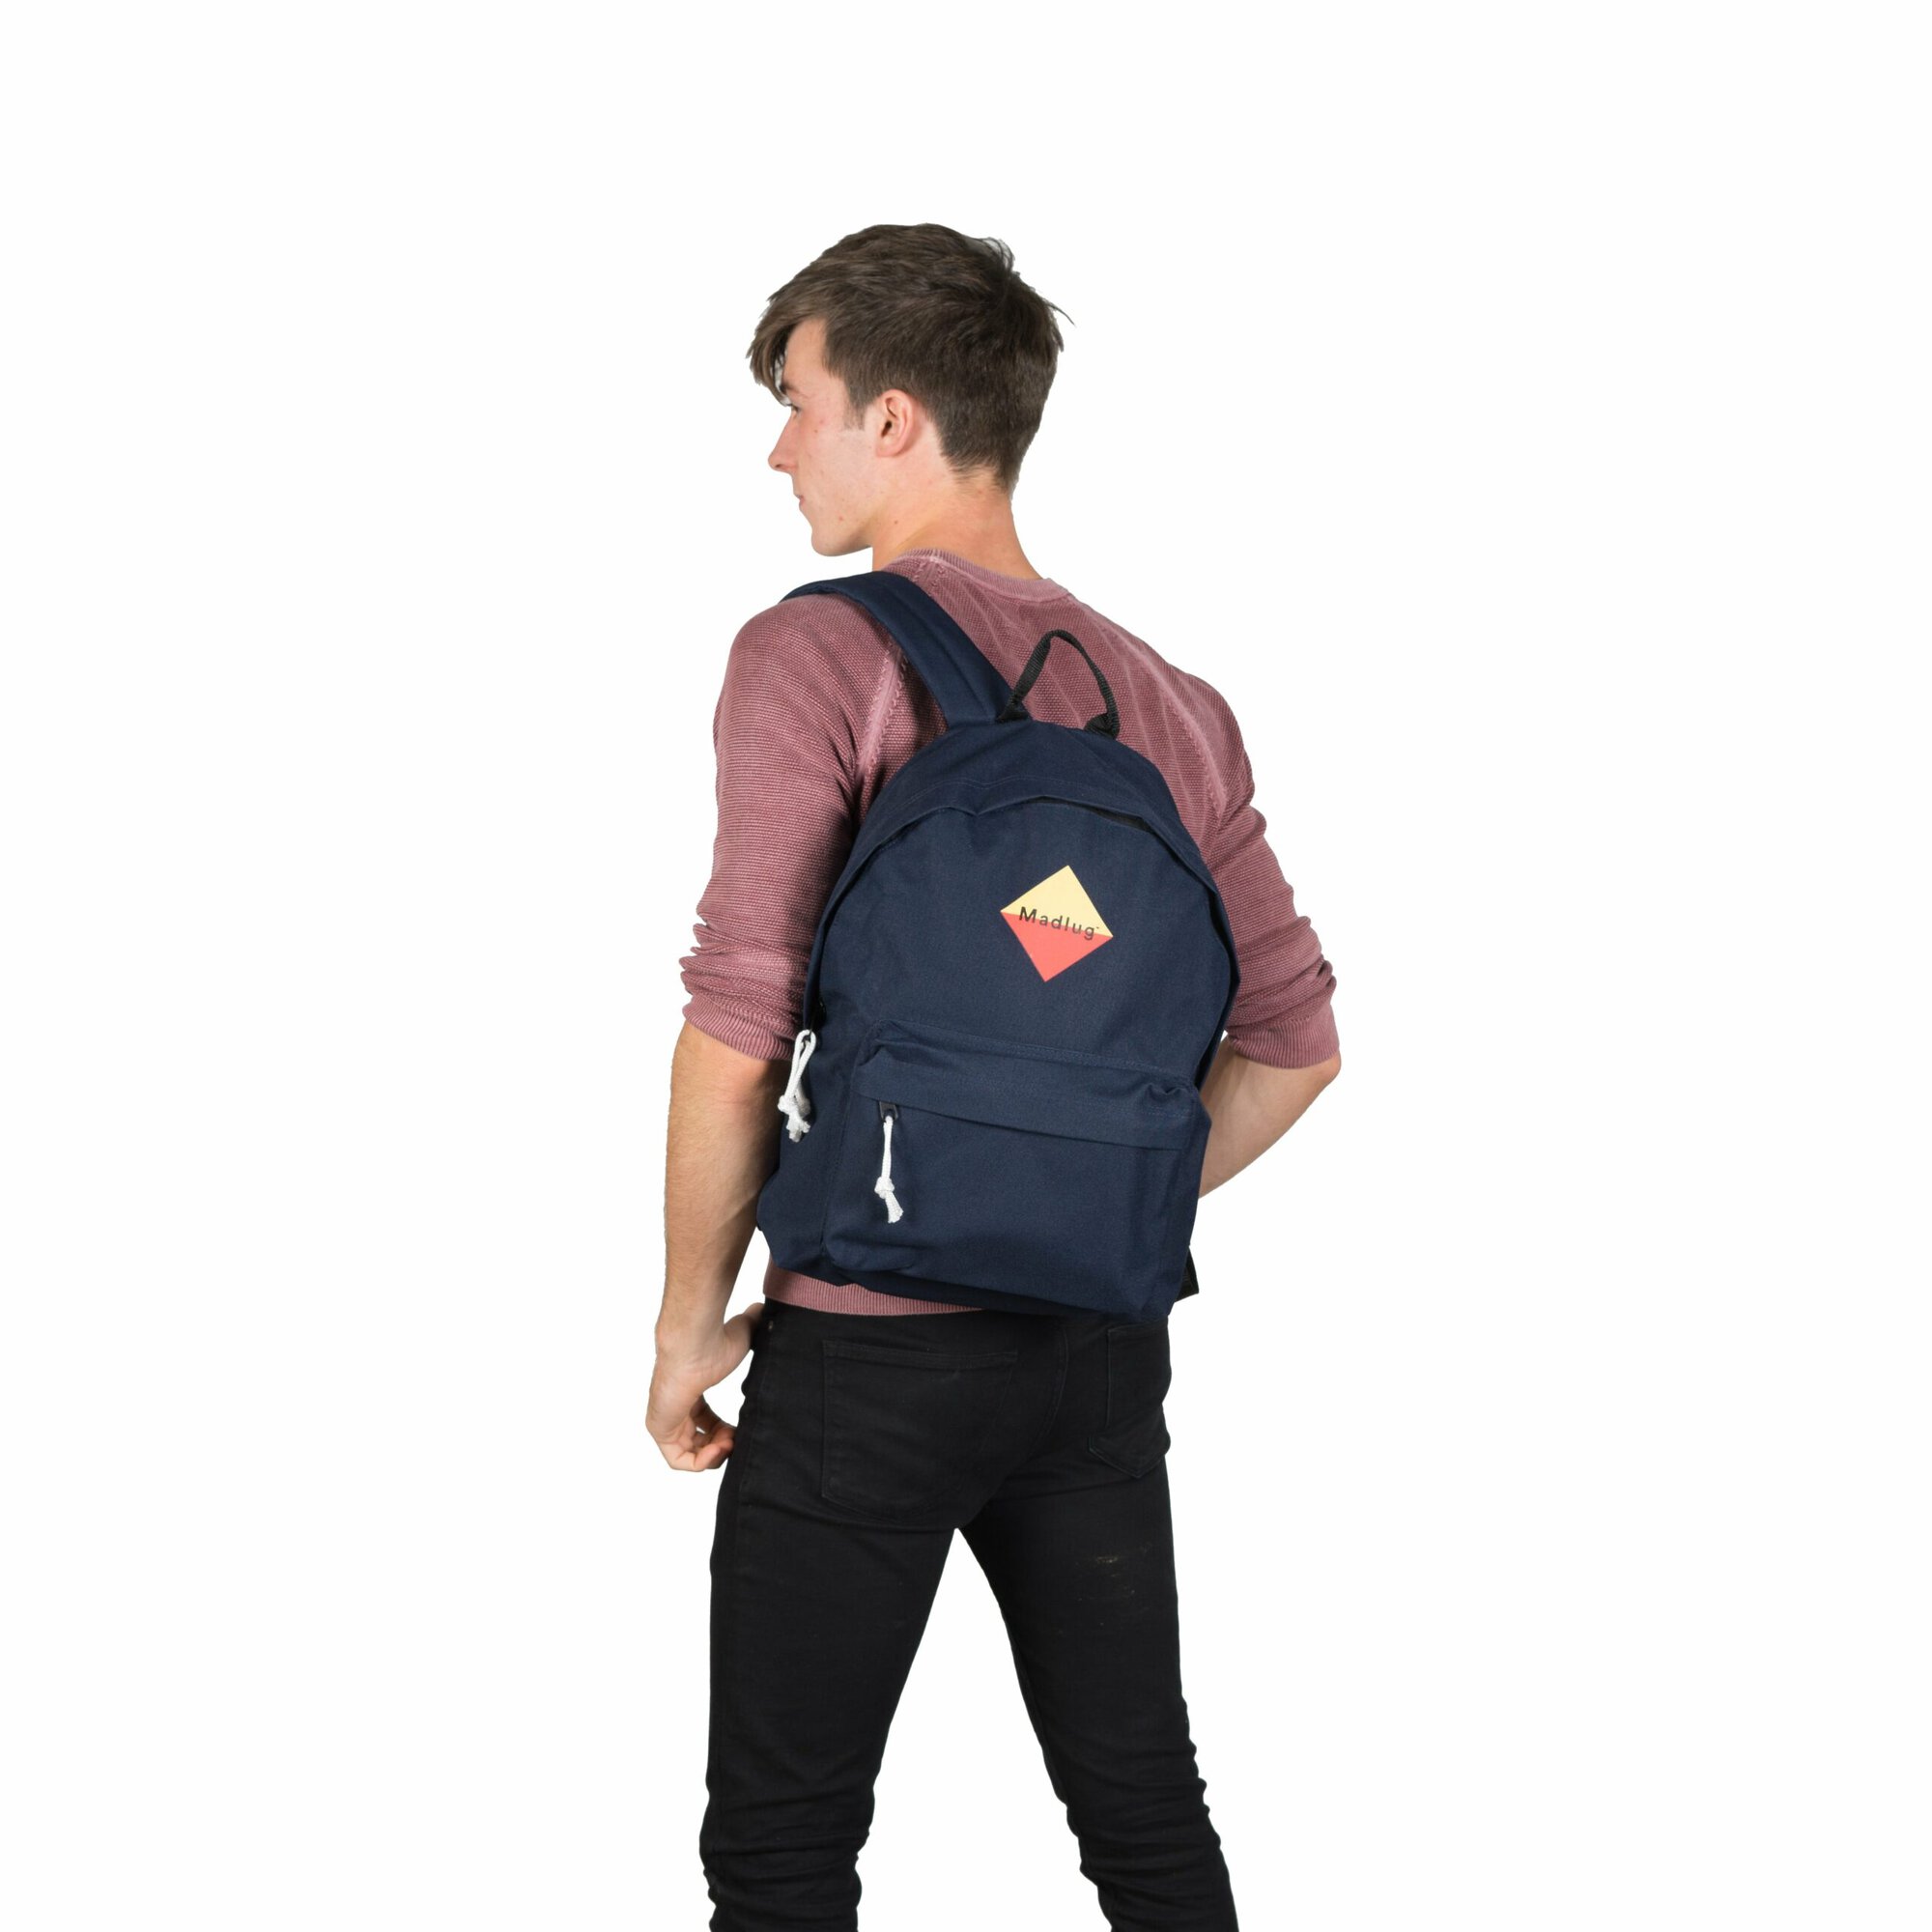 Navy Blue Backpack